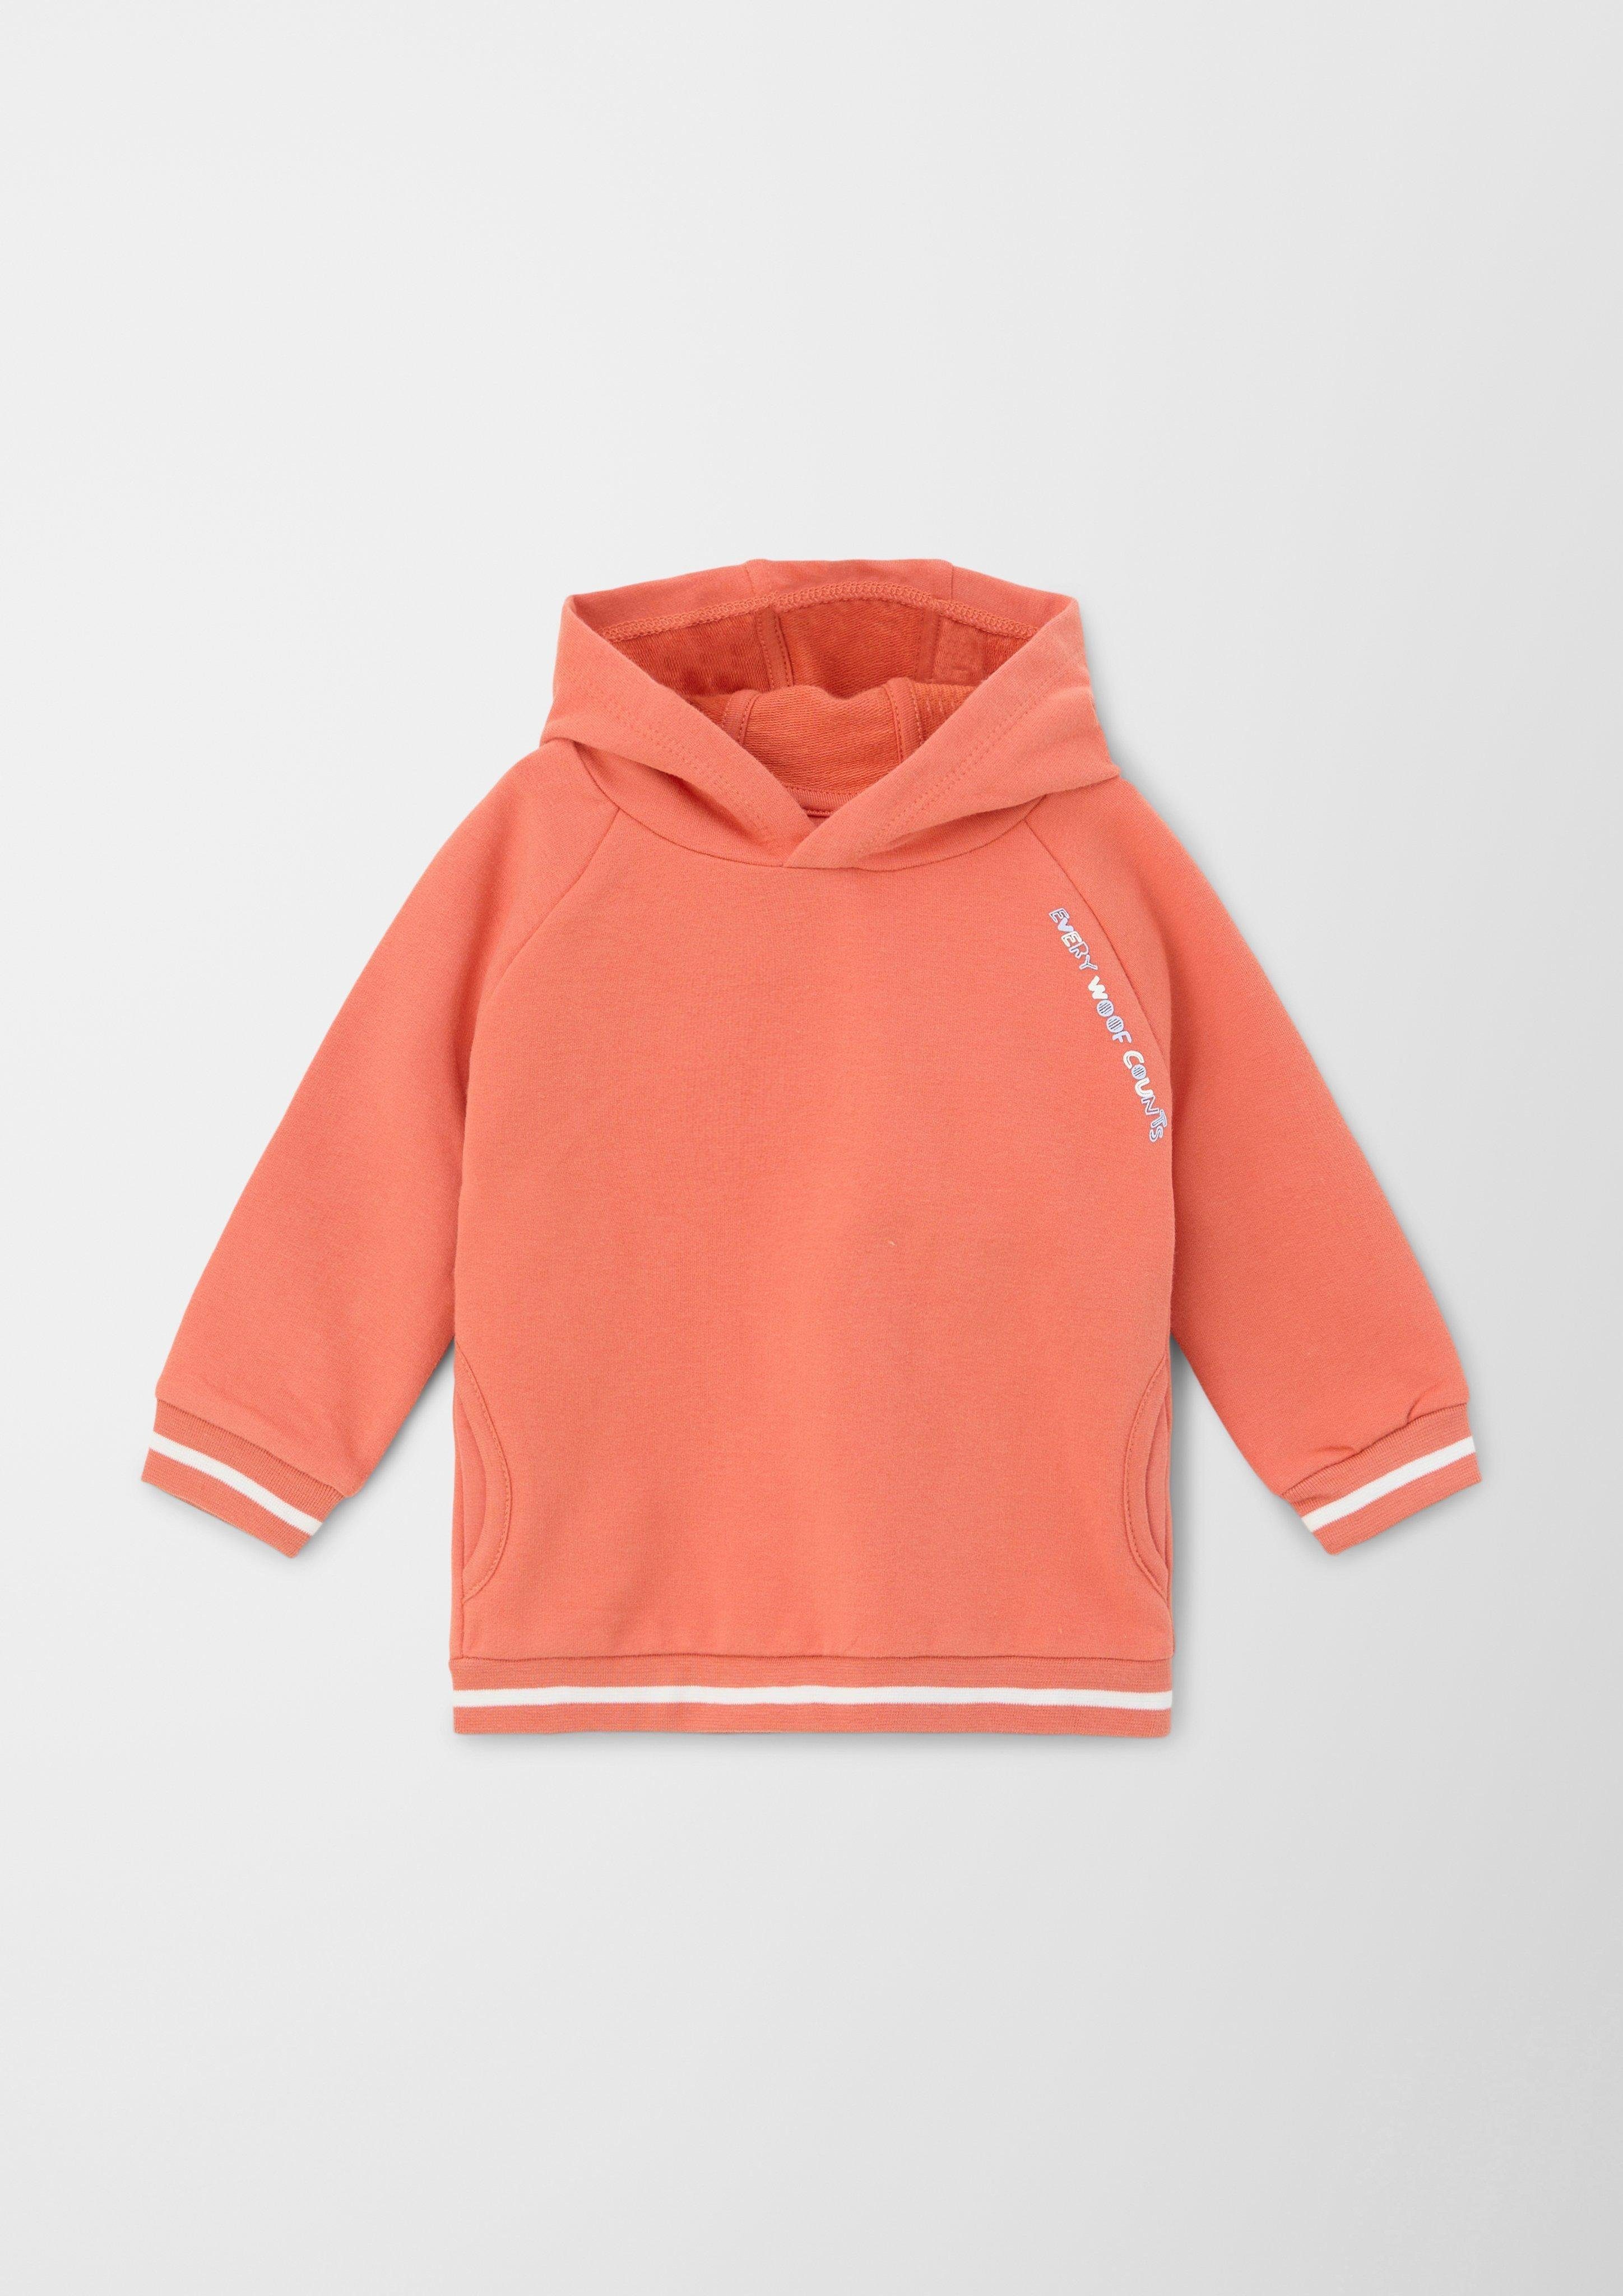 mit Streifen-Detail Kapuzensweatshirt Sweatshirt orange s.Oliver Rückenprint